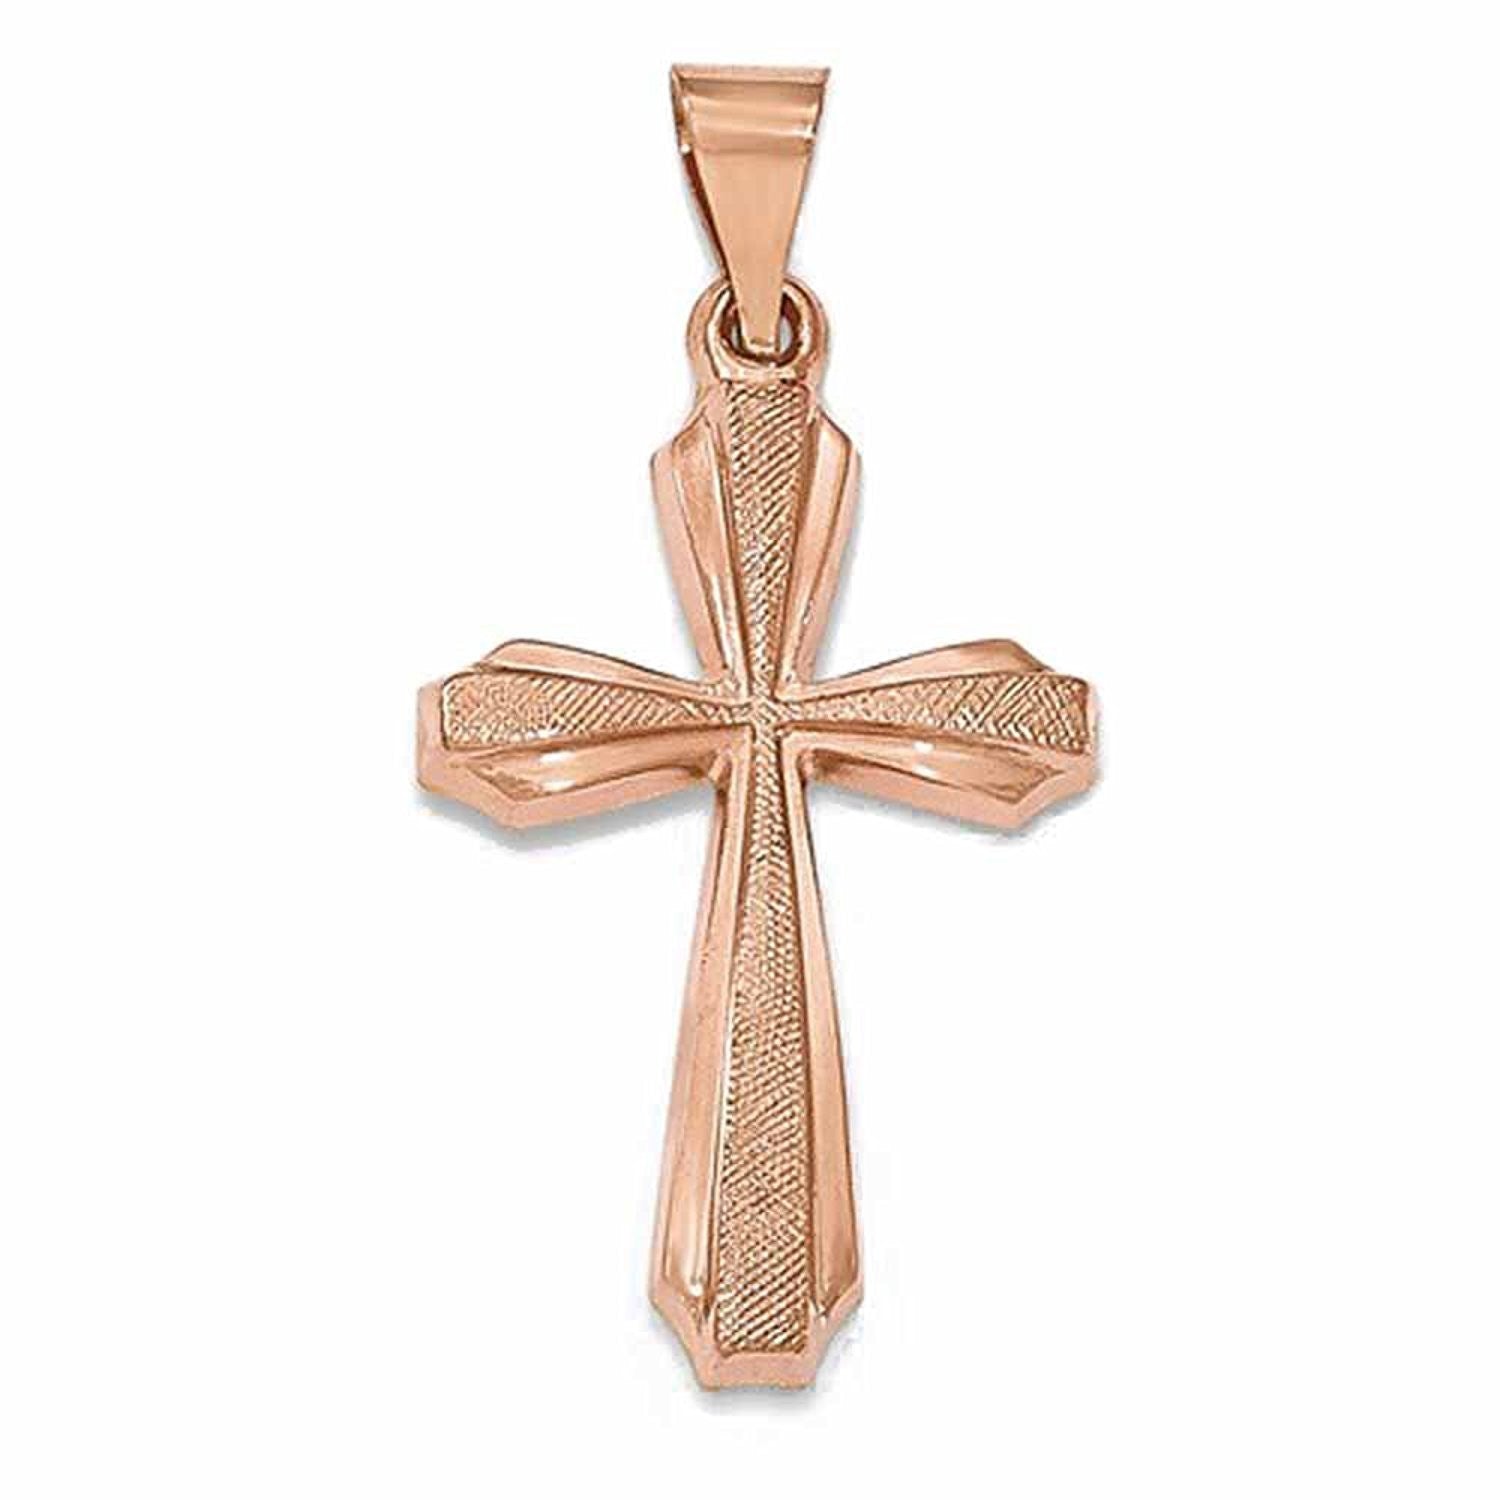 14k Rose Gold Brushed Polished Latin Cross Pendant Charm